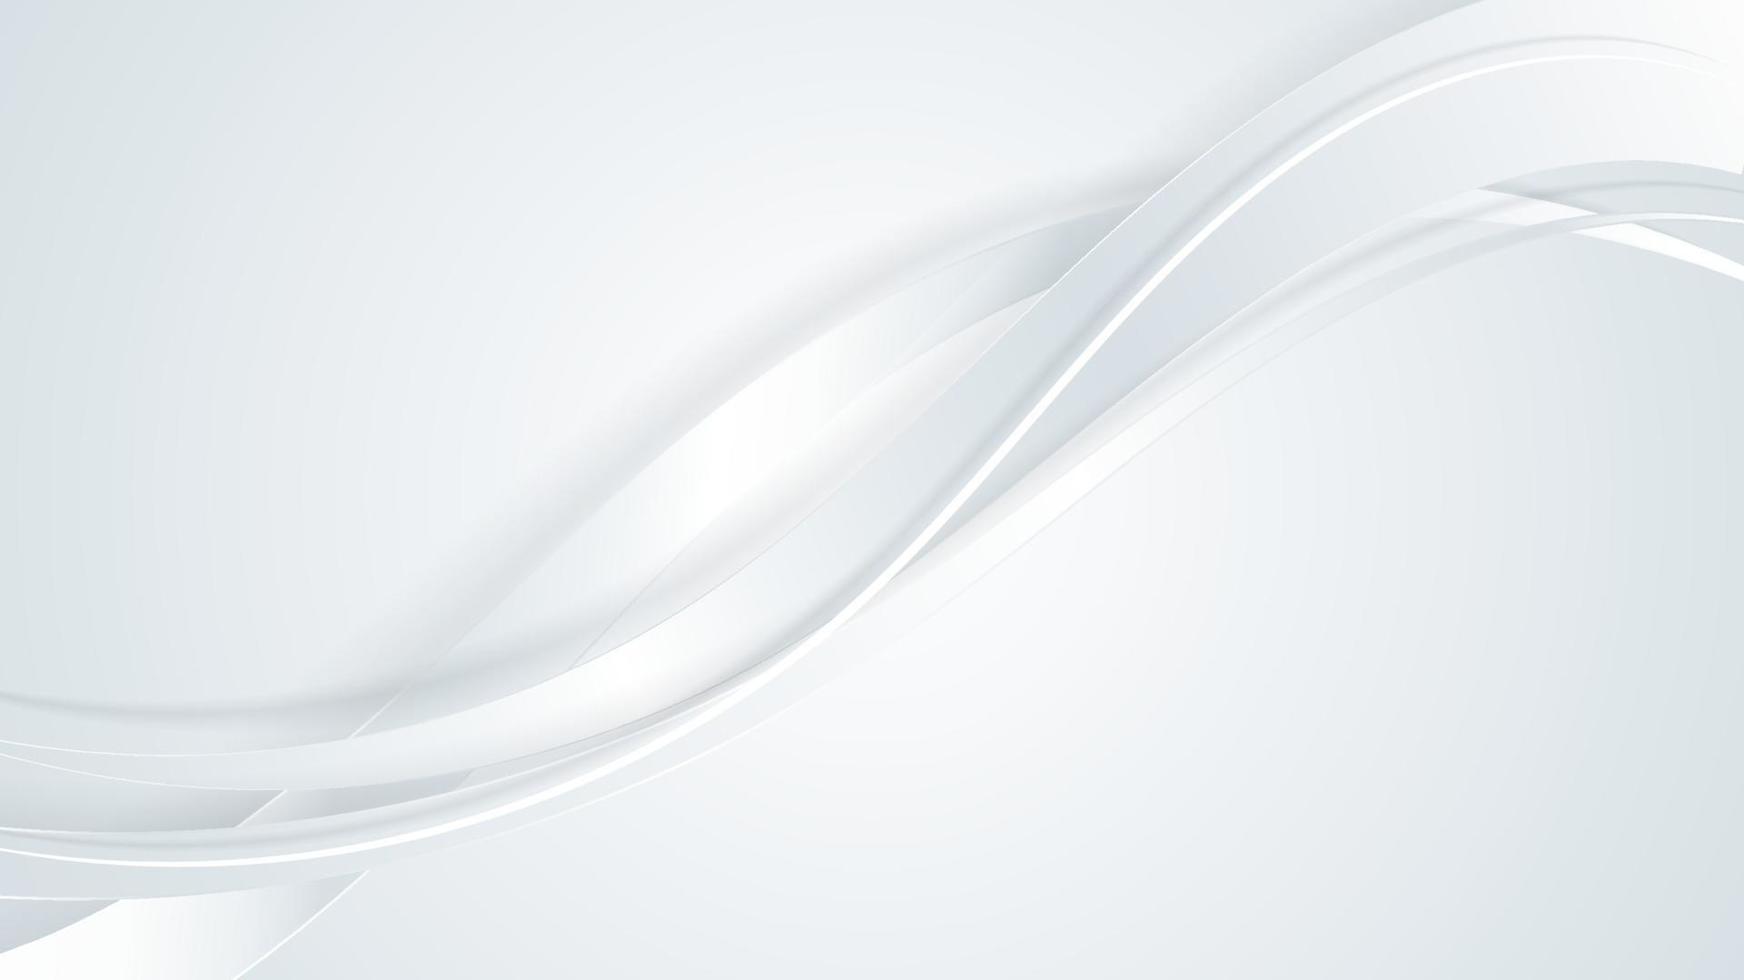 abstrait luxe 3d blanc et gris ruban vague lignes courbes sur fond propre vecteur